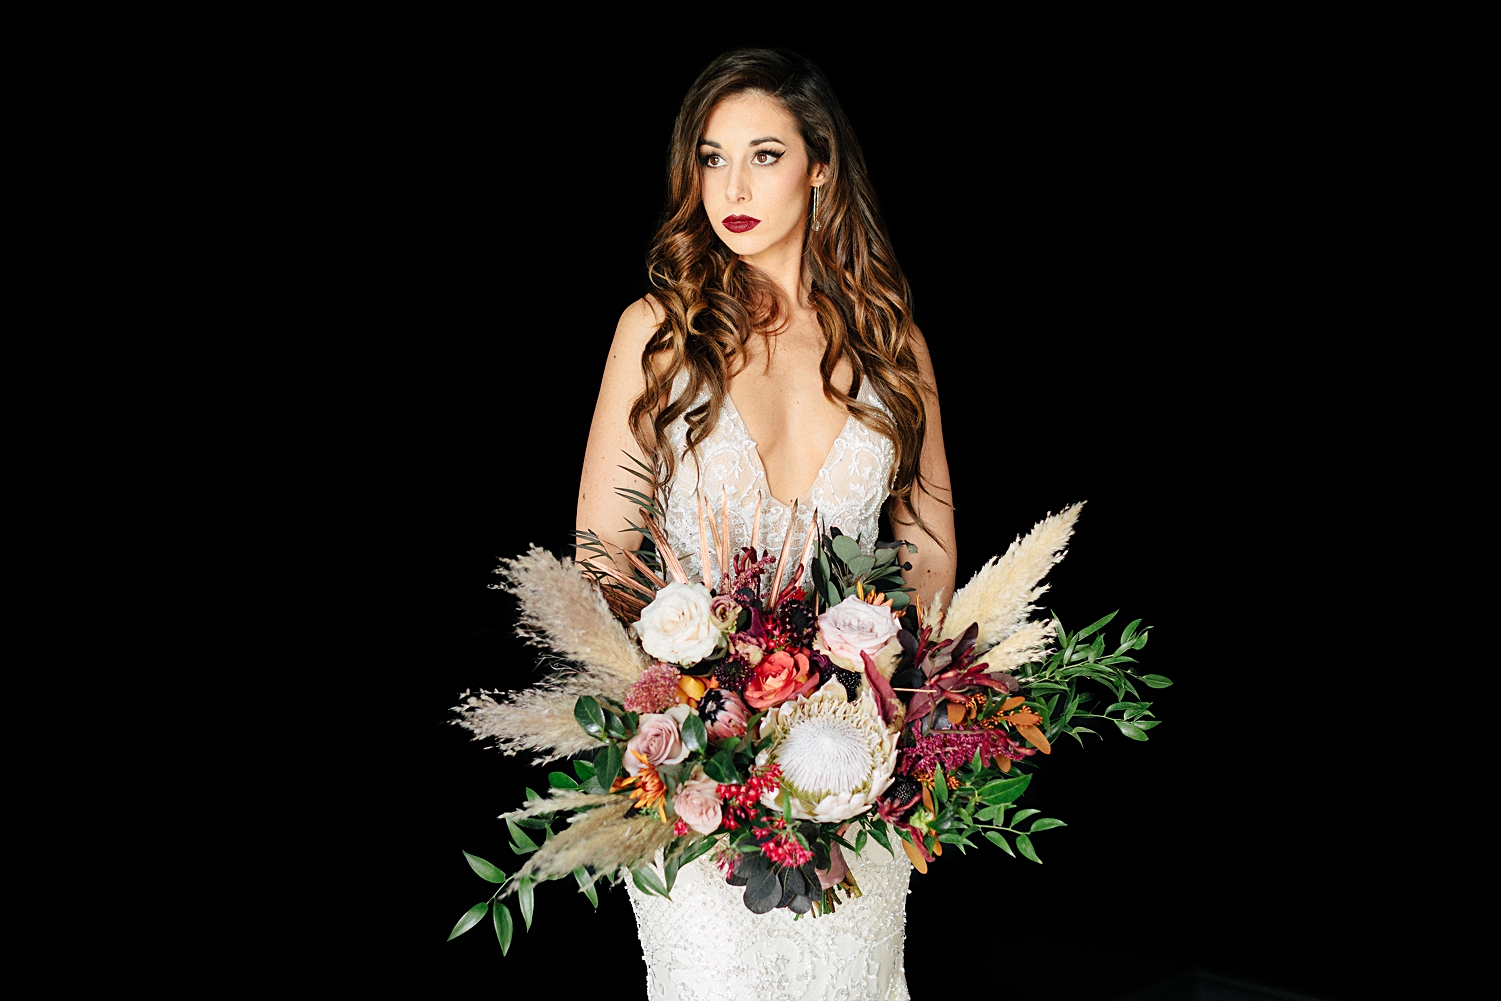 bride with large boho bouquet wedding black background